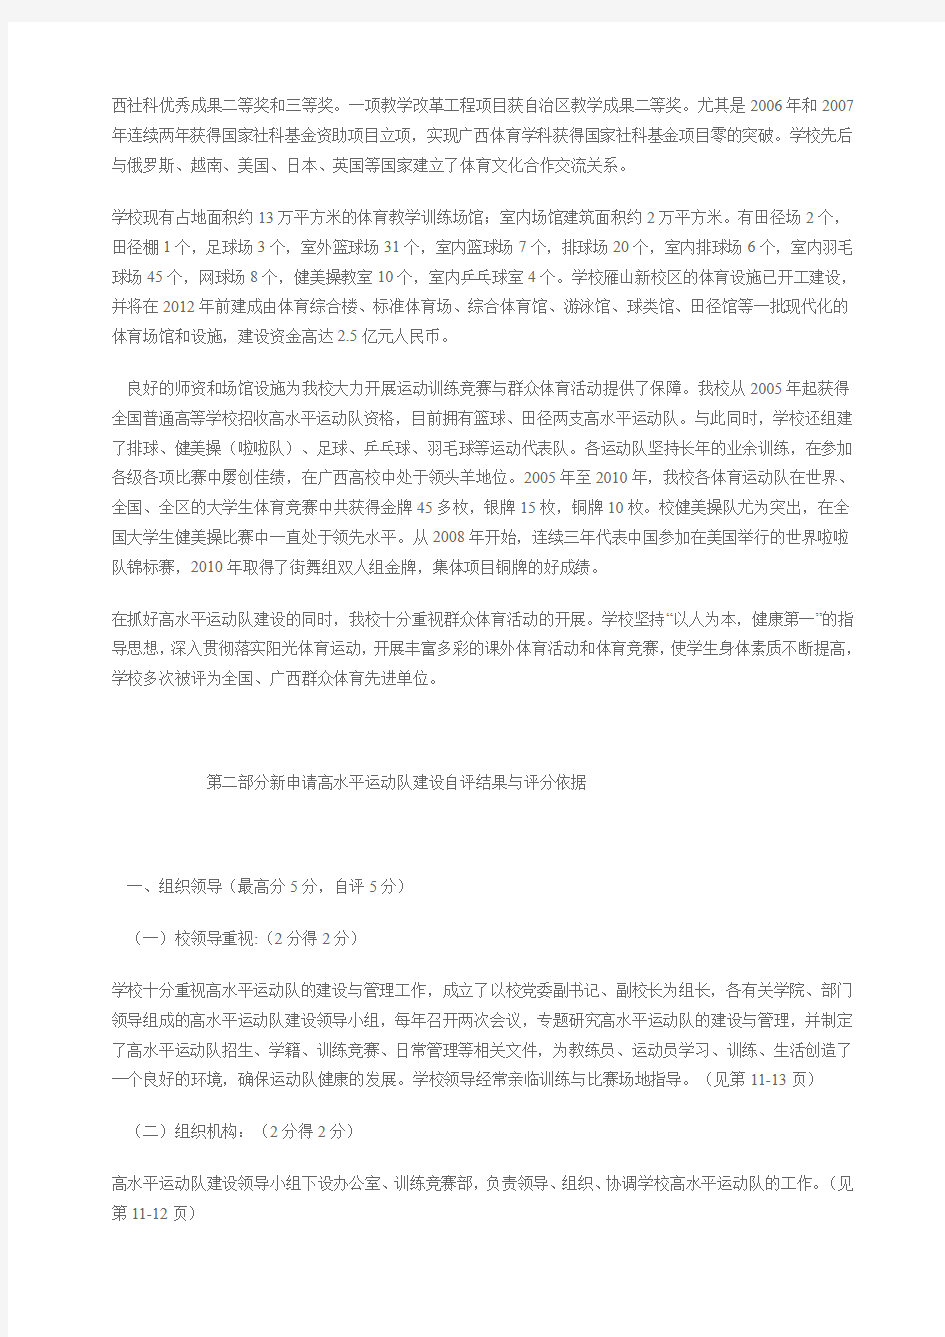 广西师范大学申报高水平运动队建设足球项目自评报告